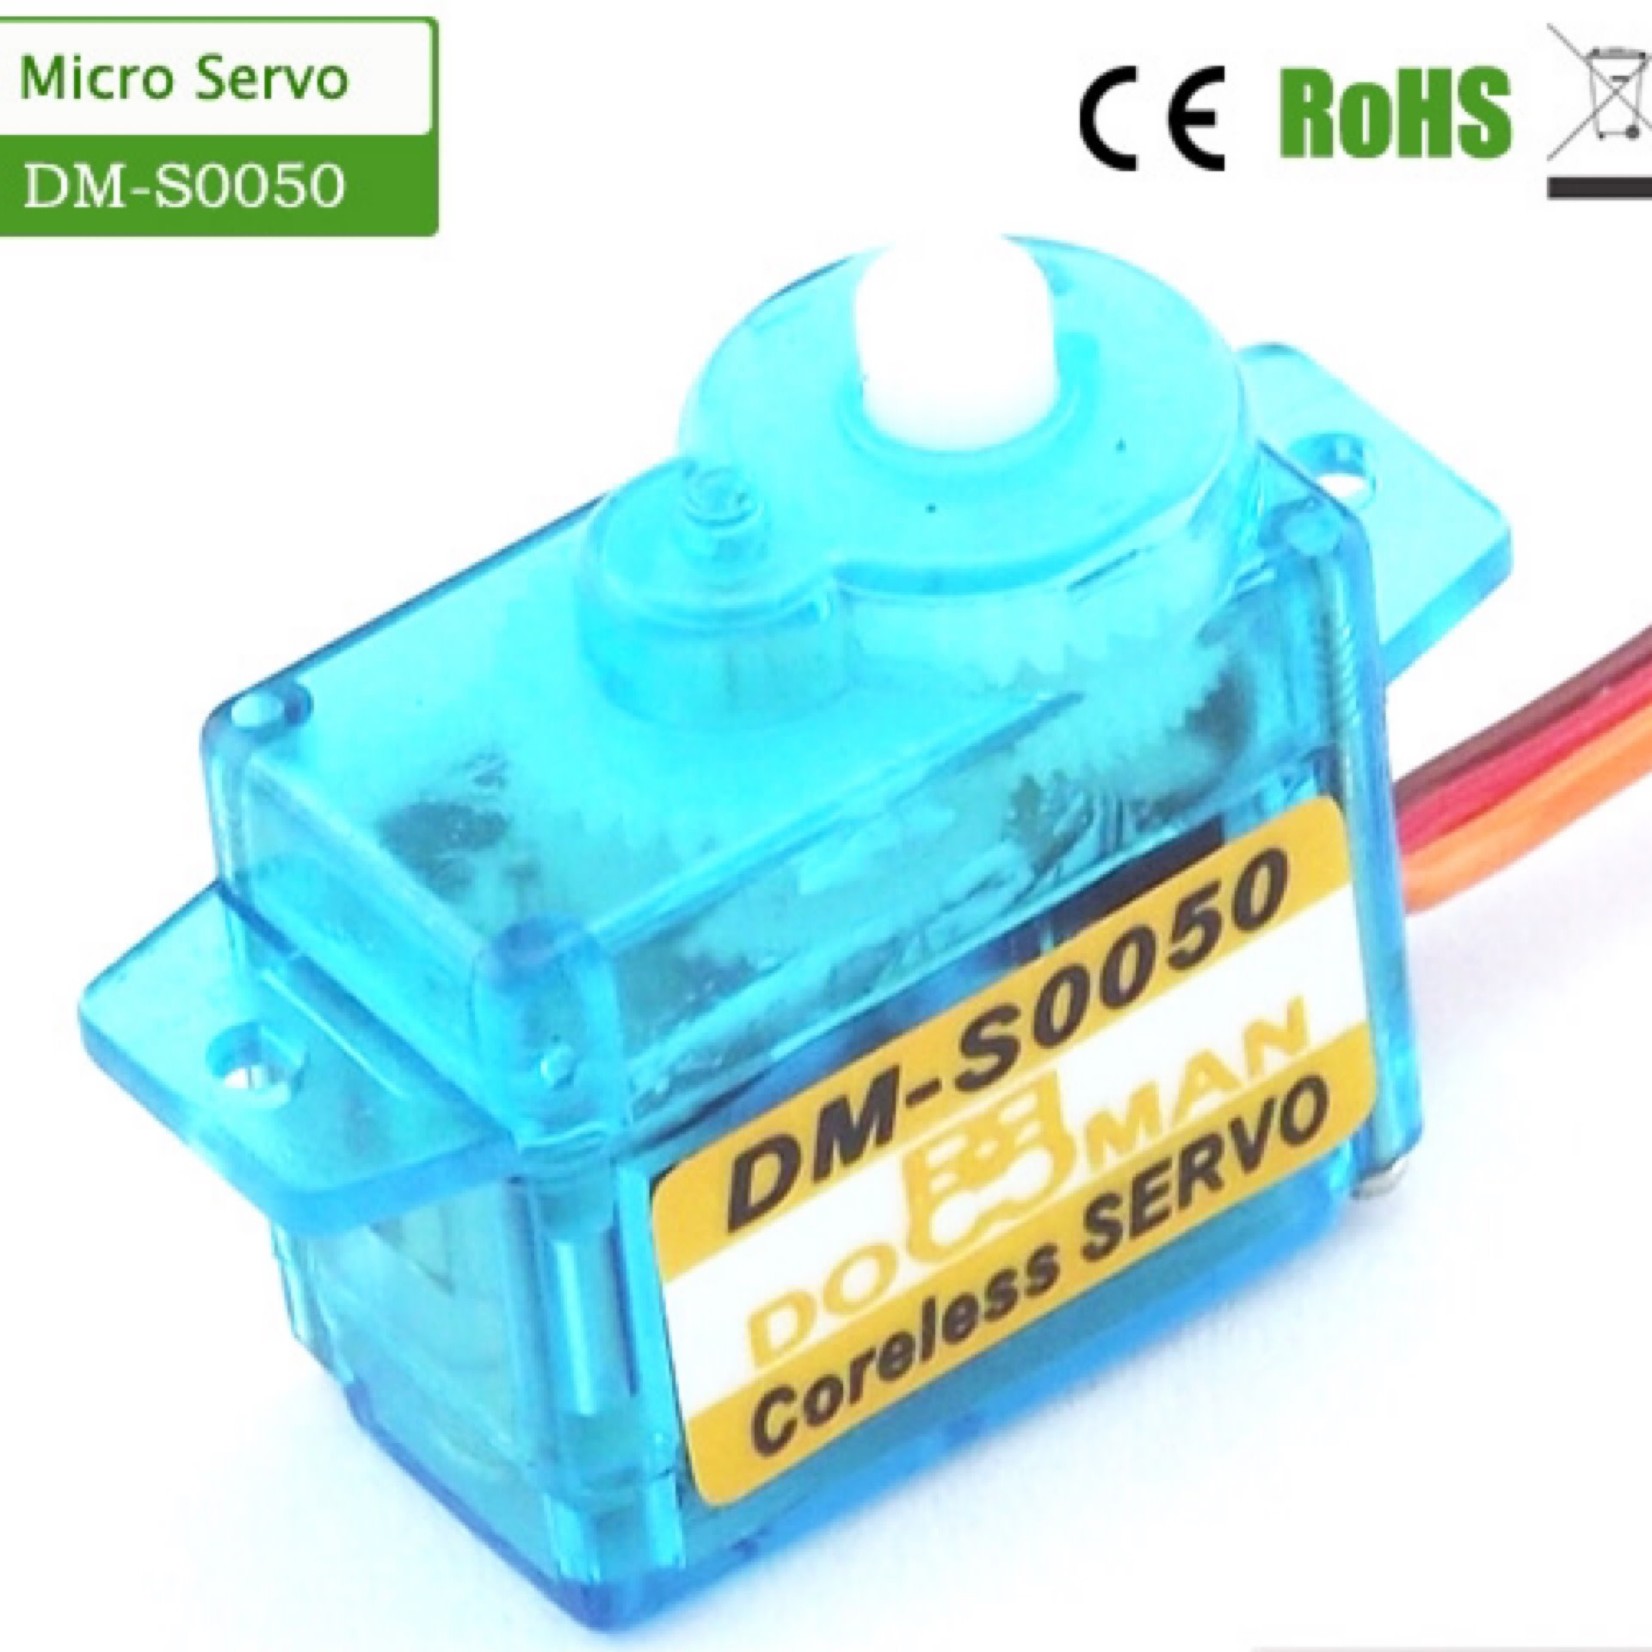 Doman Doman 5g Coreless Micro Servo #DM-S0050